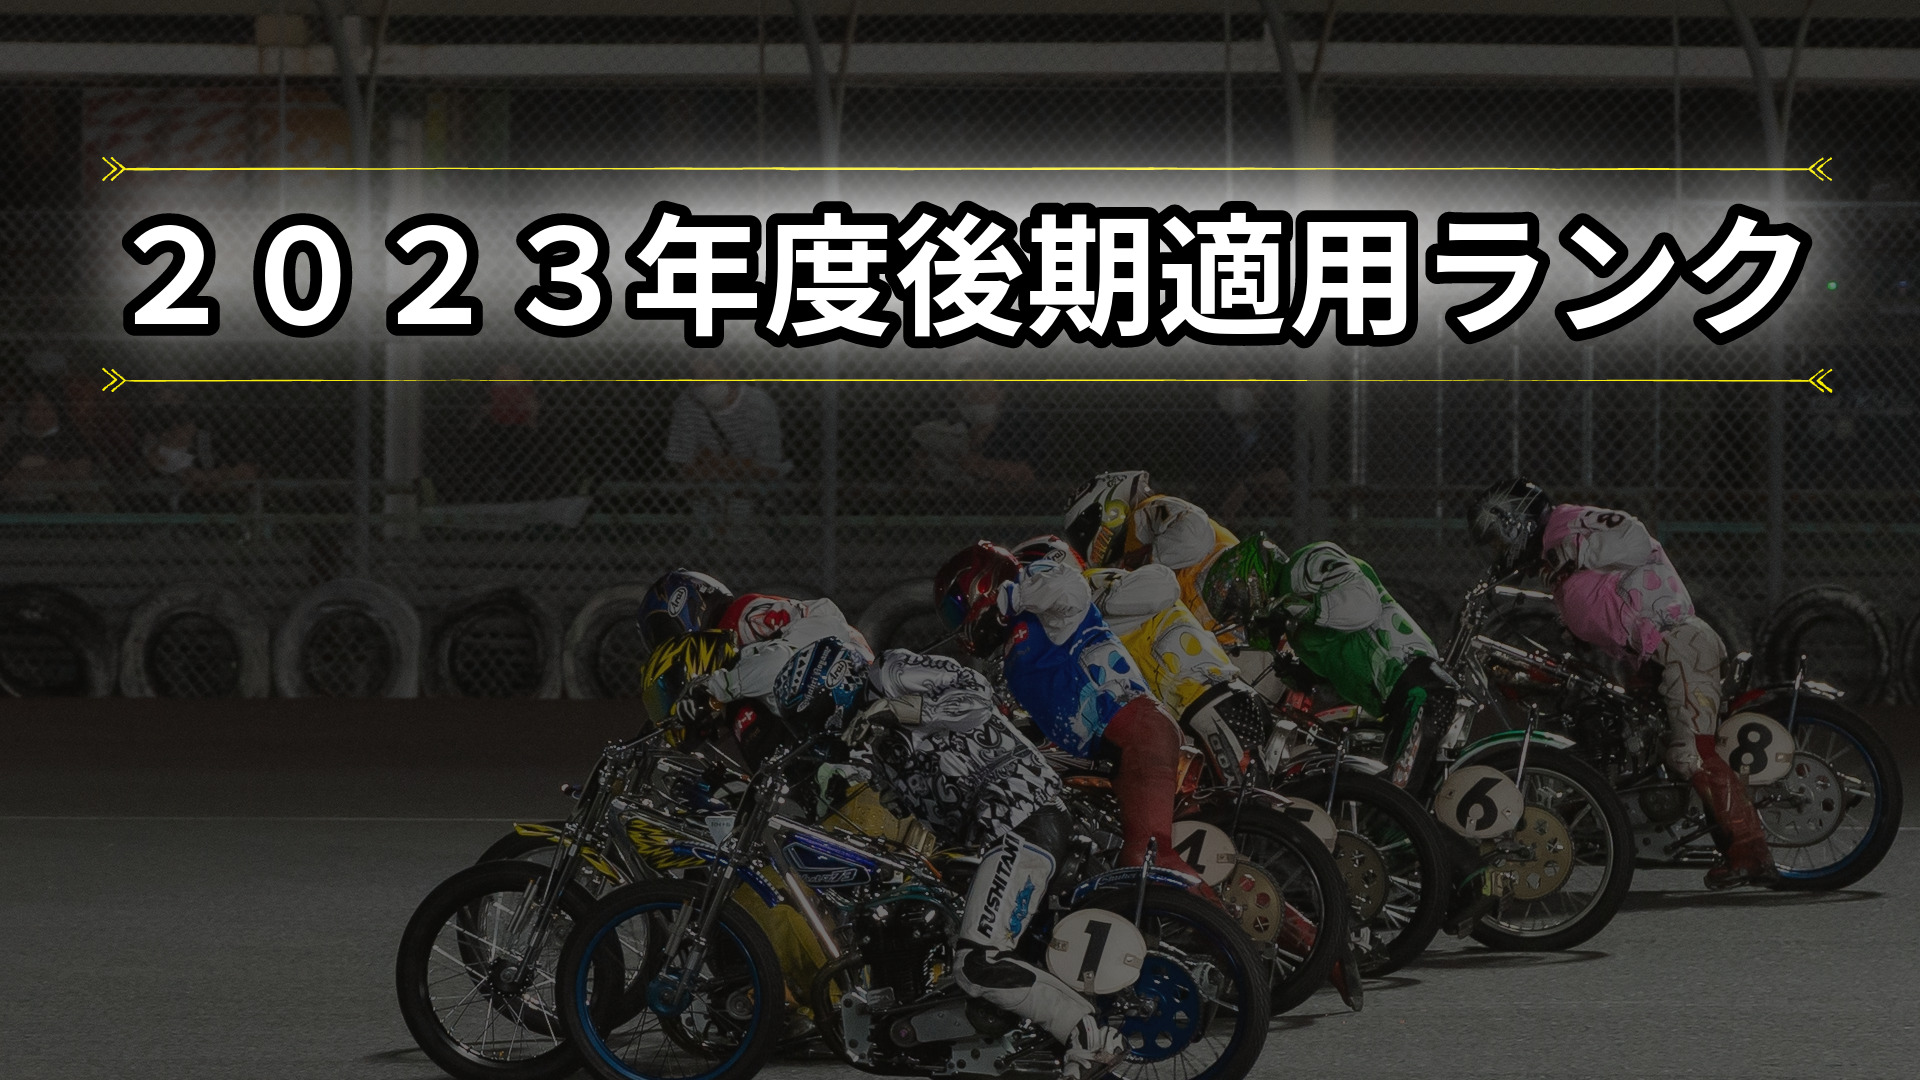 オートレース】鈴木圭一郎が８度目のS-1【2023年度後期ランクS級選手